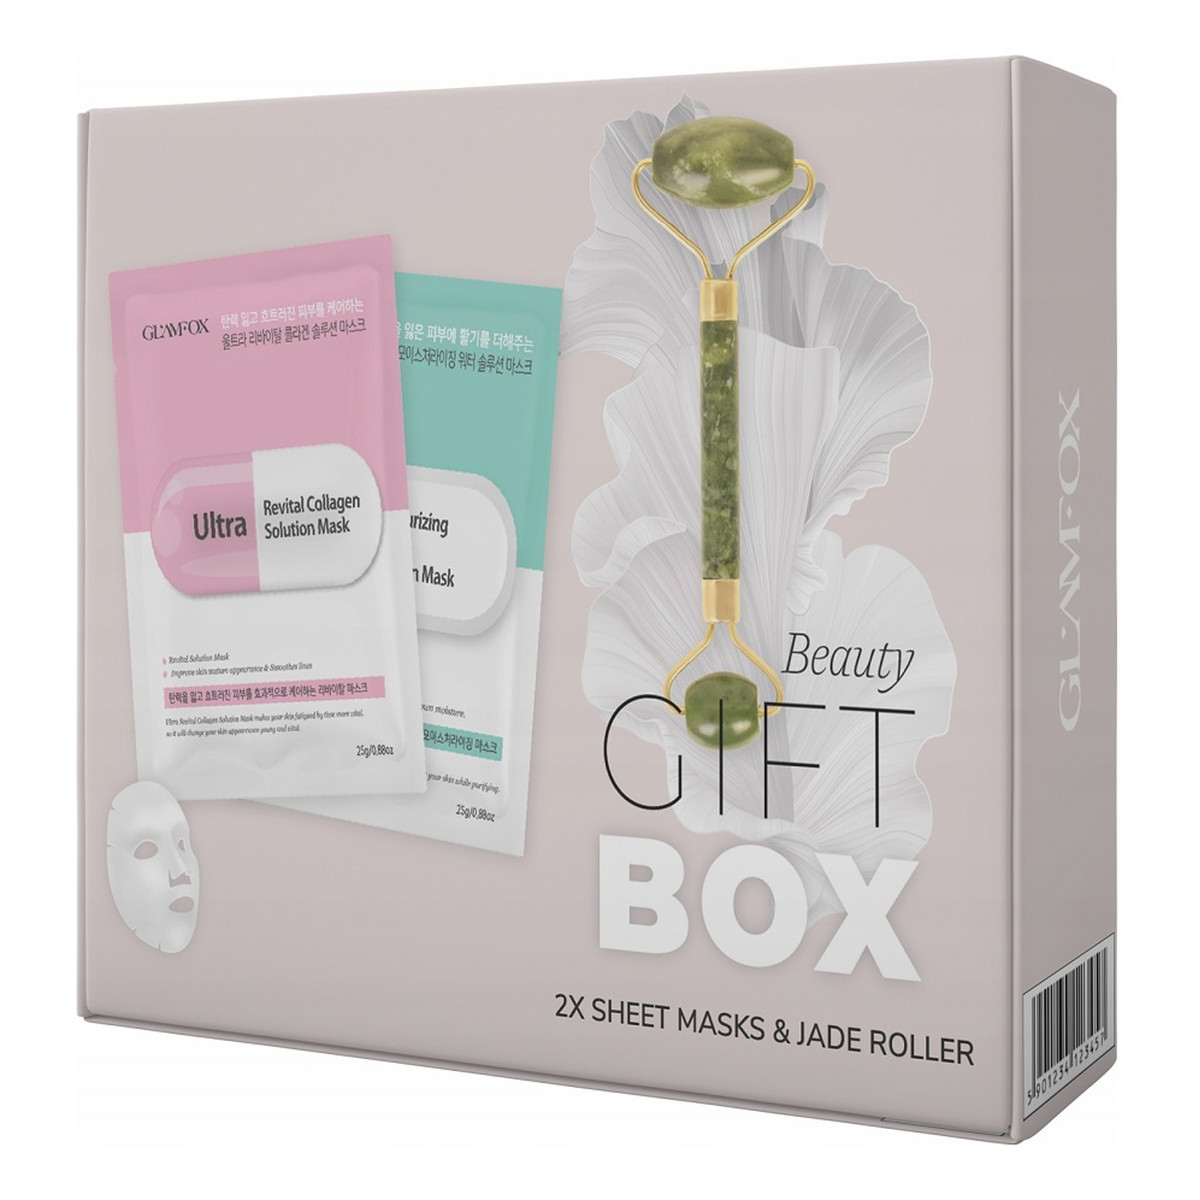 Glamfox Beauty Gift Box Zestaw nawilżająco-kojąca maska w płachcie 25ml + rewitalizująca maska w płachcie 25ml + roller do masażu twarzy